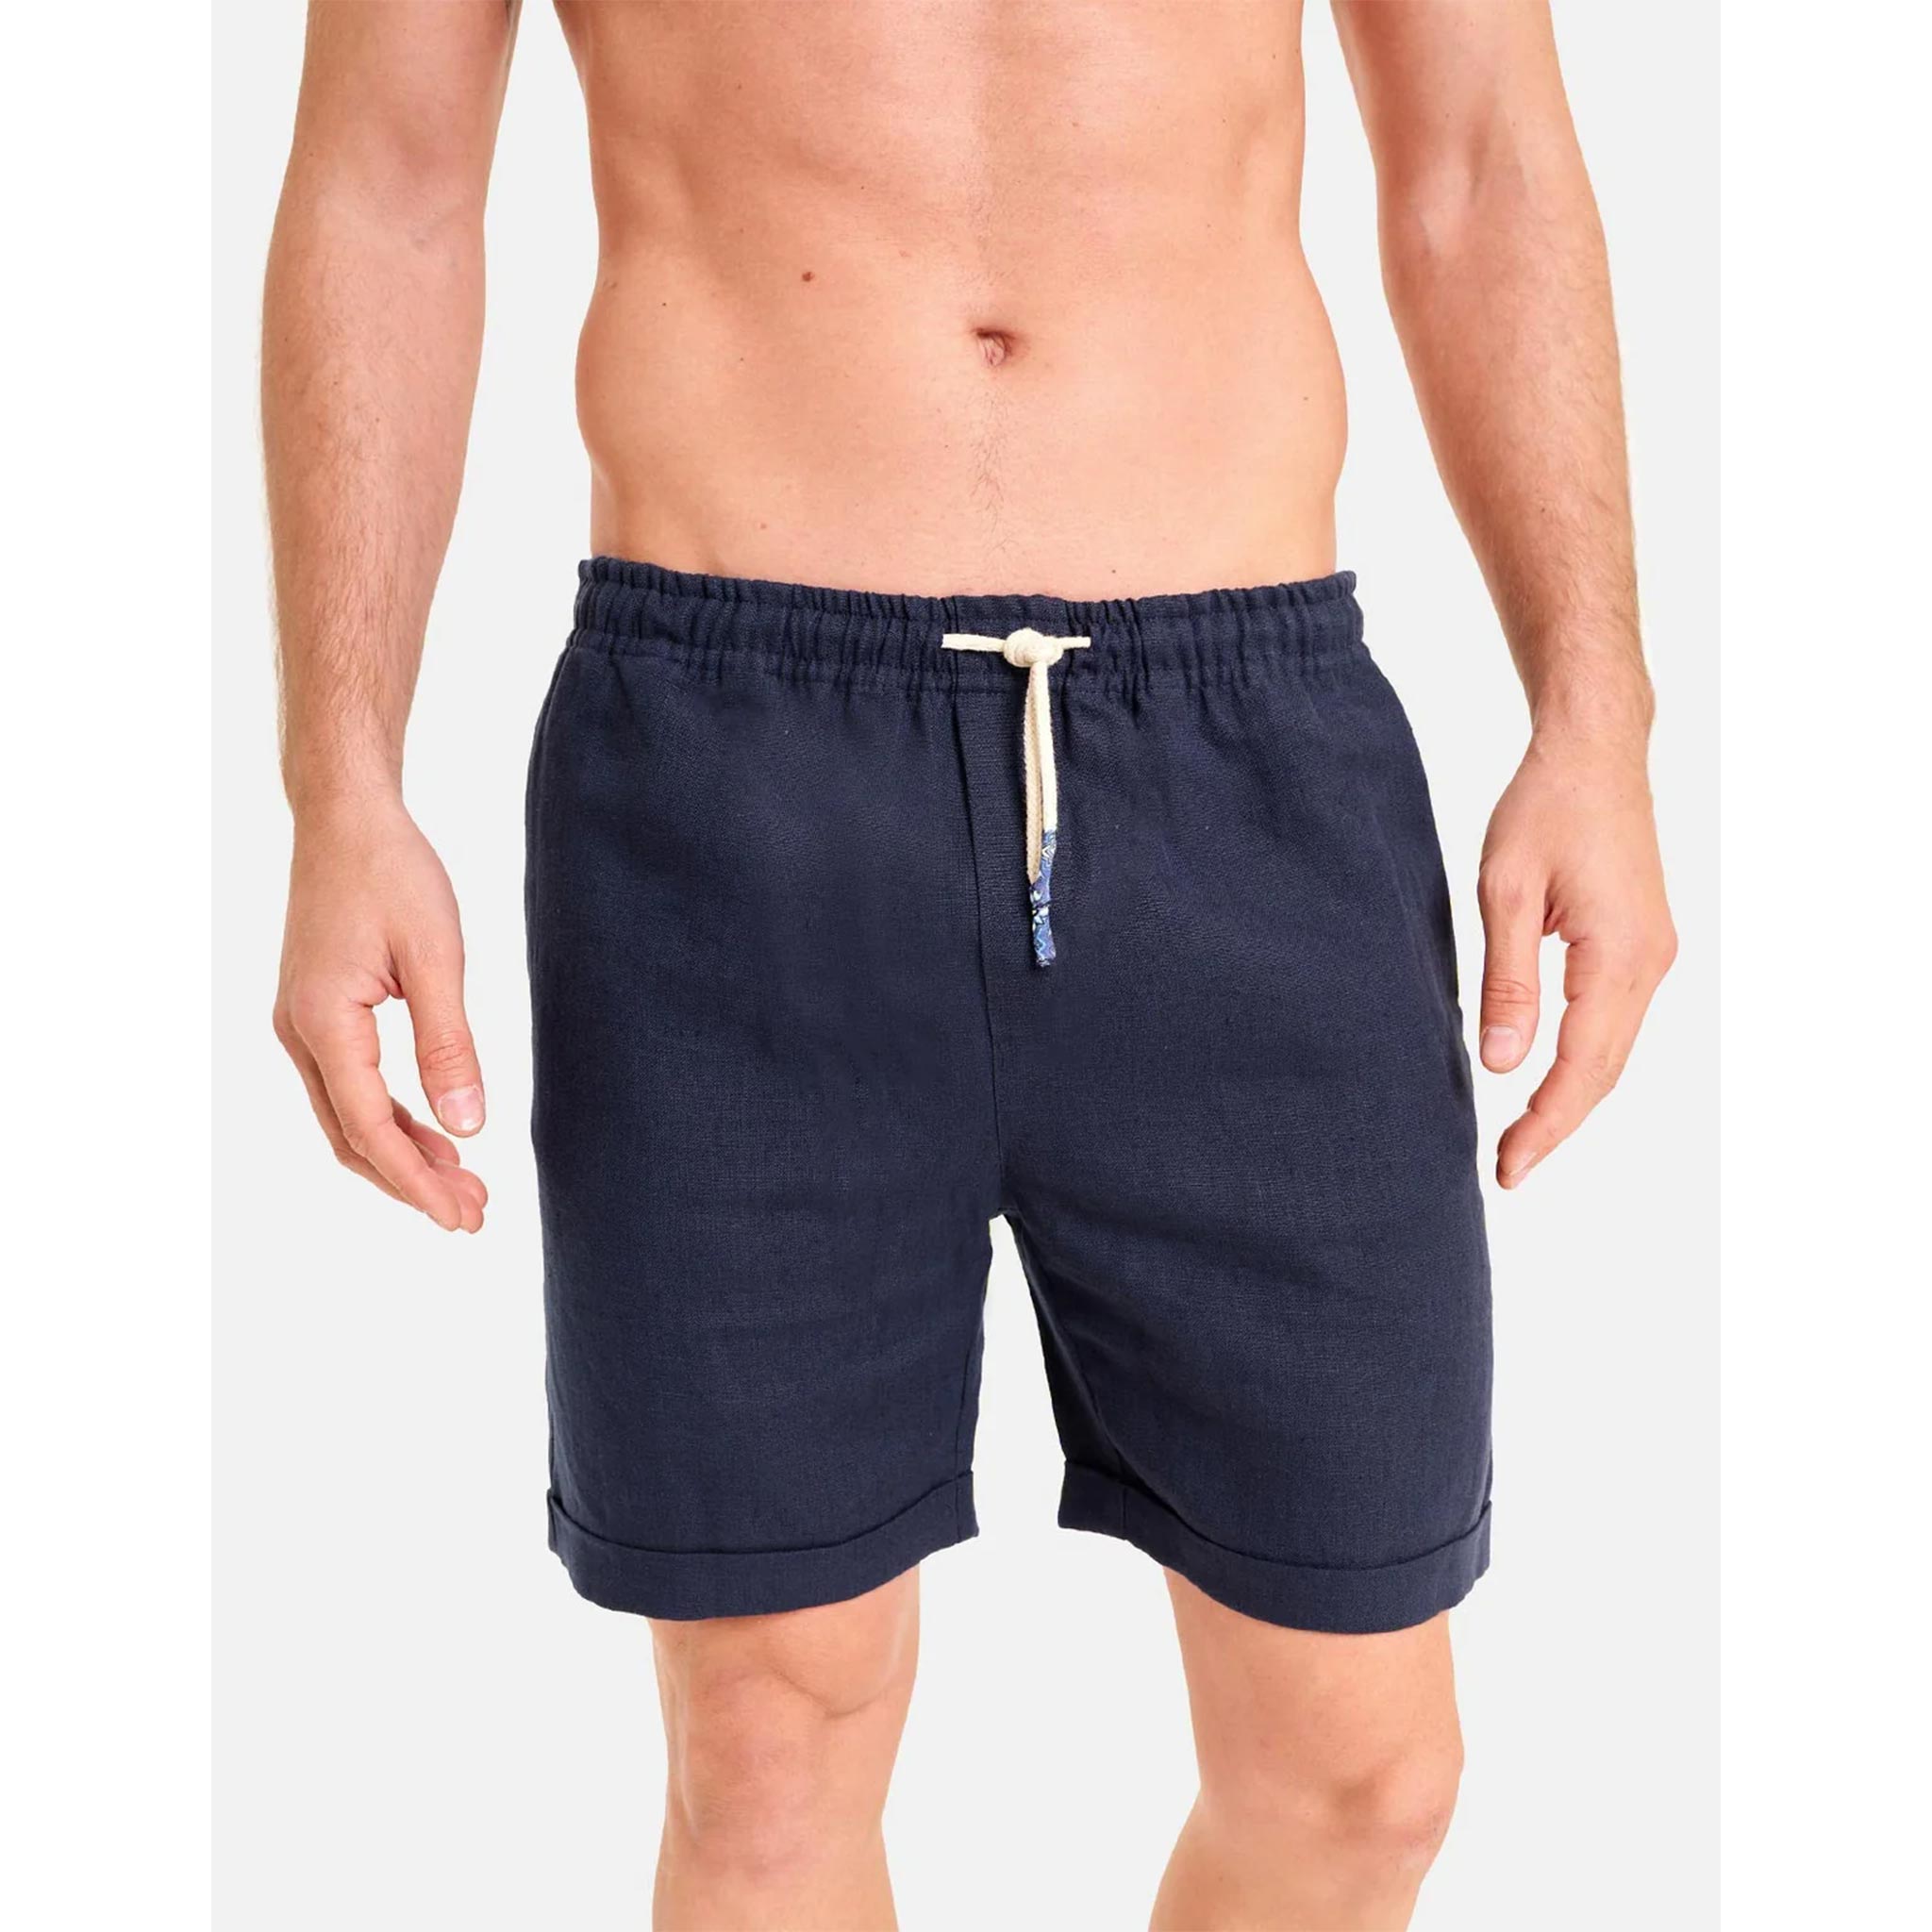 Stromboli Shorts in Navy